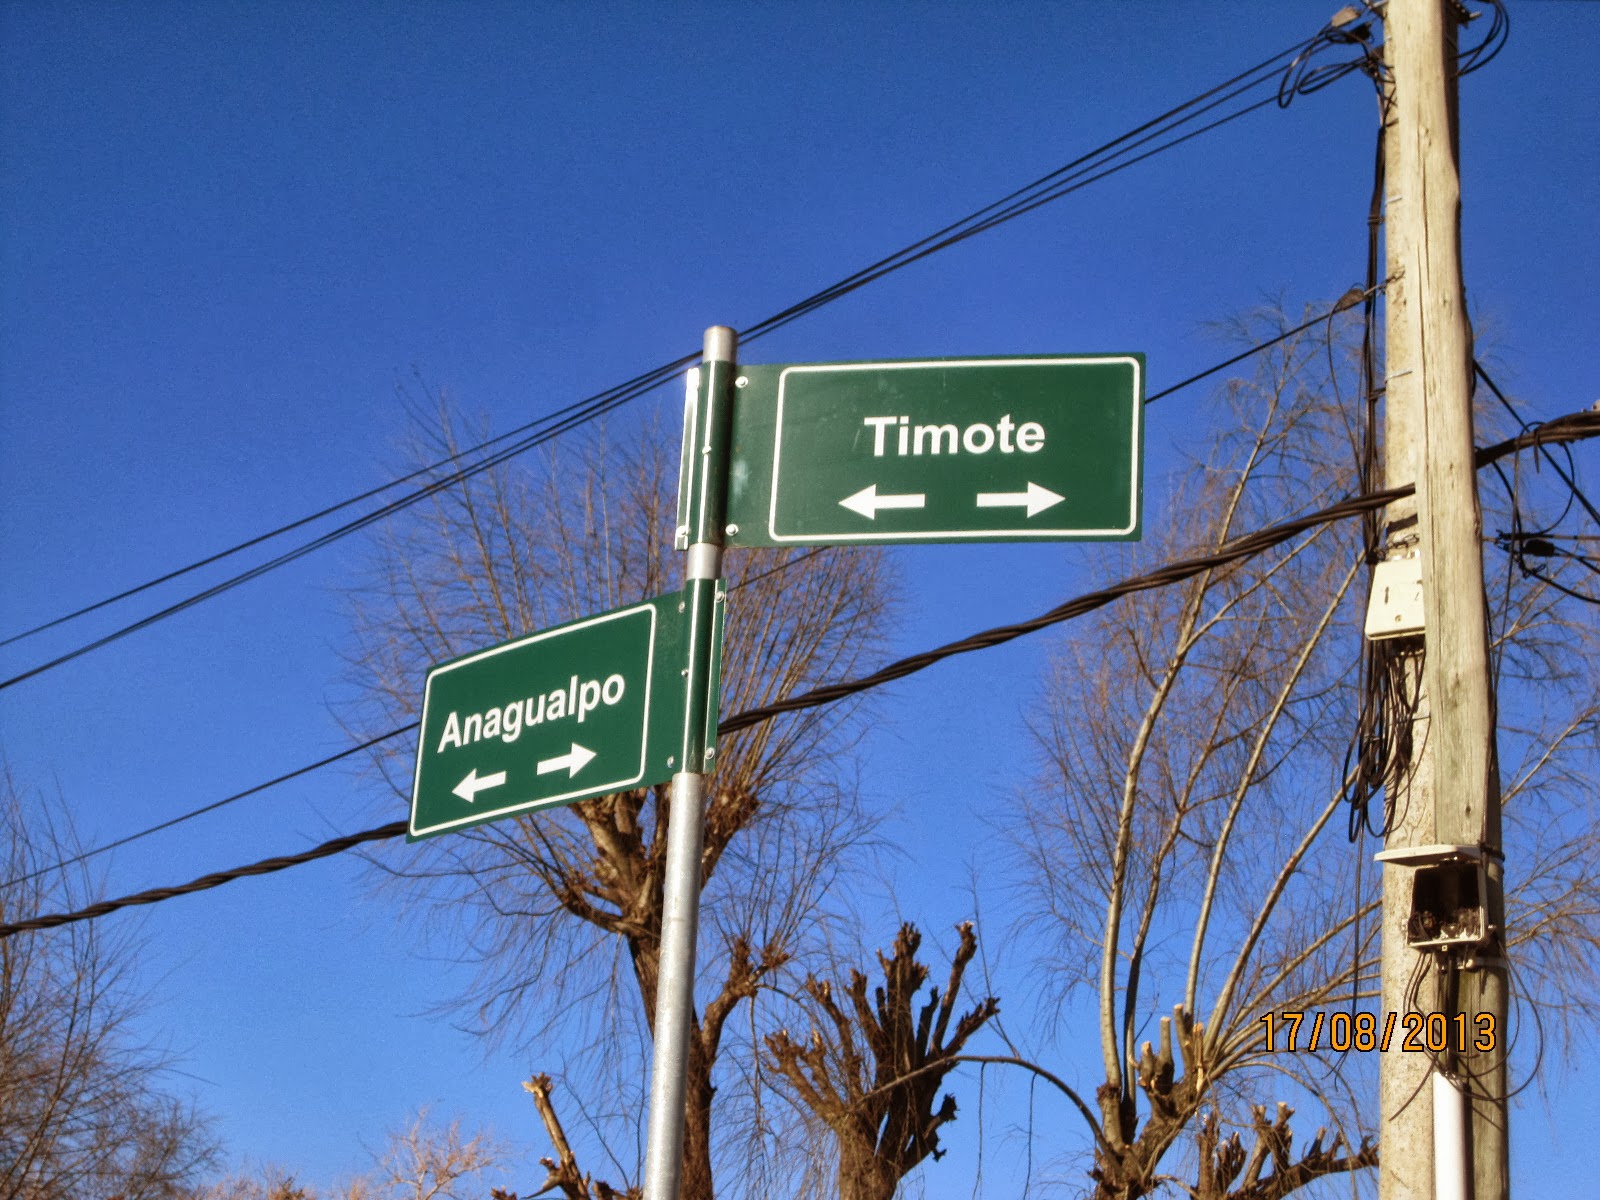 Fotos Anagualpo y Timote